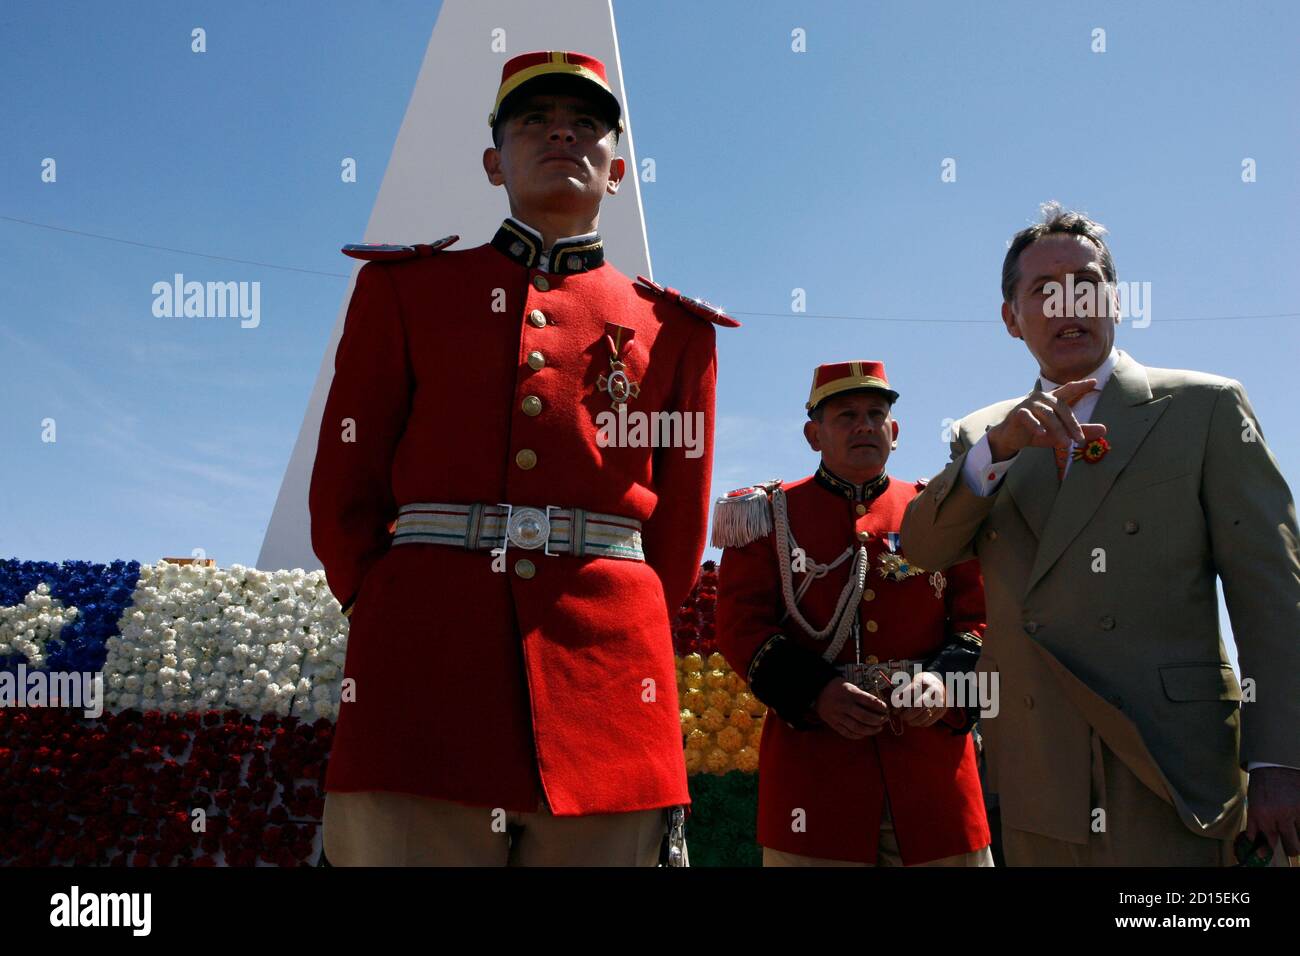 Ronald McLean Avaroa (R) se encuentra junto a oficiales del ejército  boliviano que visten los uniformes del histórico Batallón 'Colorados de  Bolivia' durante una ceremonia en honor al pariente y héroe boliviano